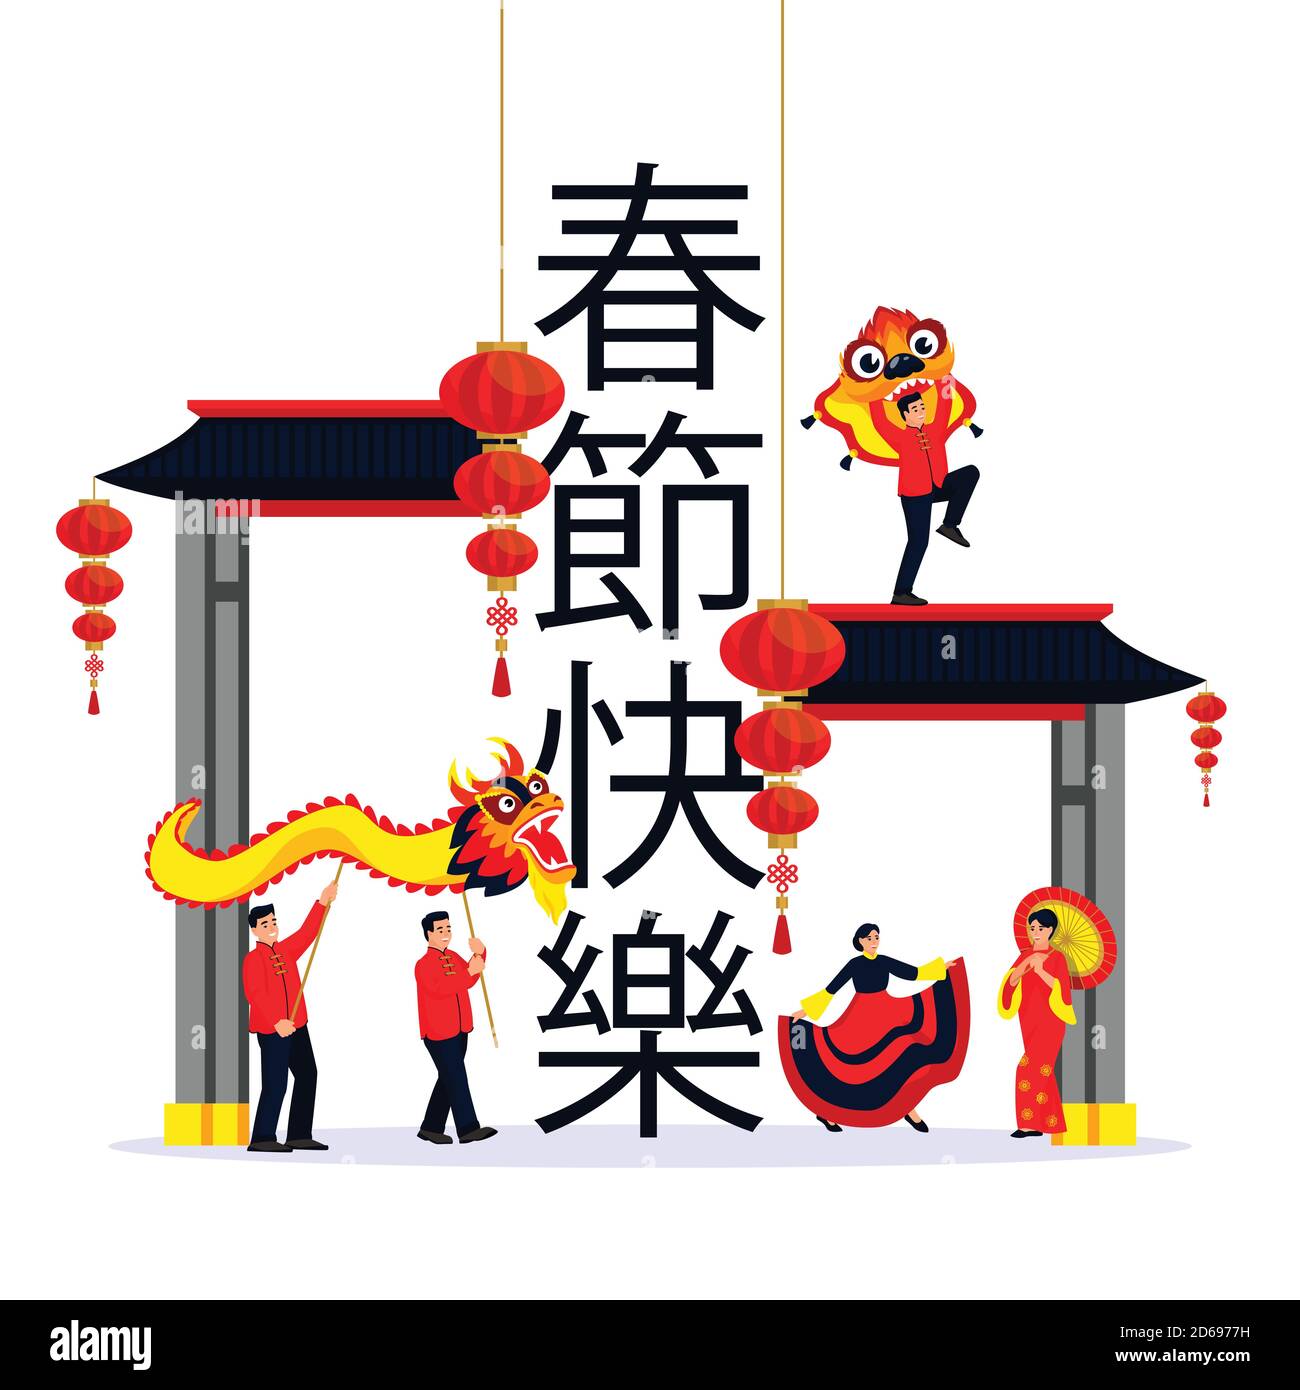 Célébration de la nouvelle année lunaire chinoise. Illustration vectorielle à dessin animé à plat isolée. Dansant des personnes, des dragon et des lanternes sur des personnages chinois signifie Happy CH Illustration de Vecteur